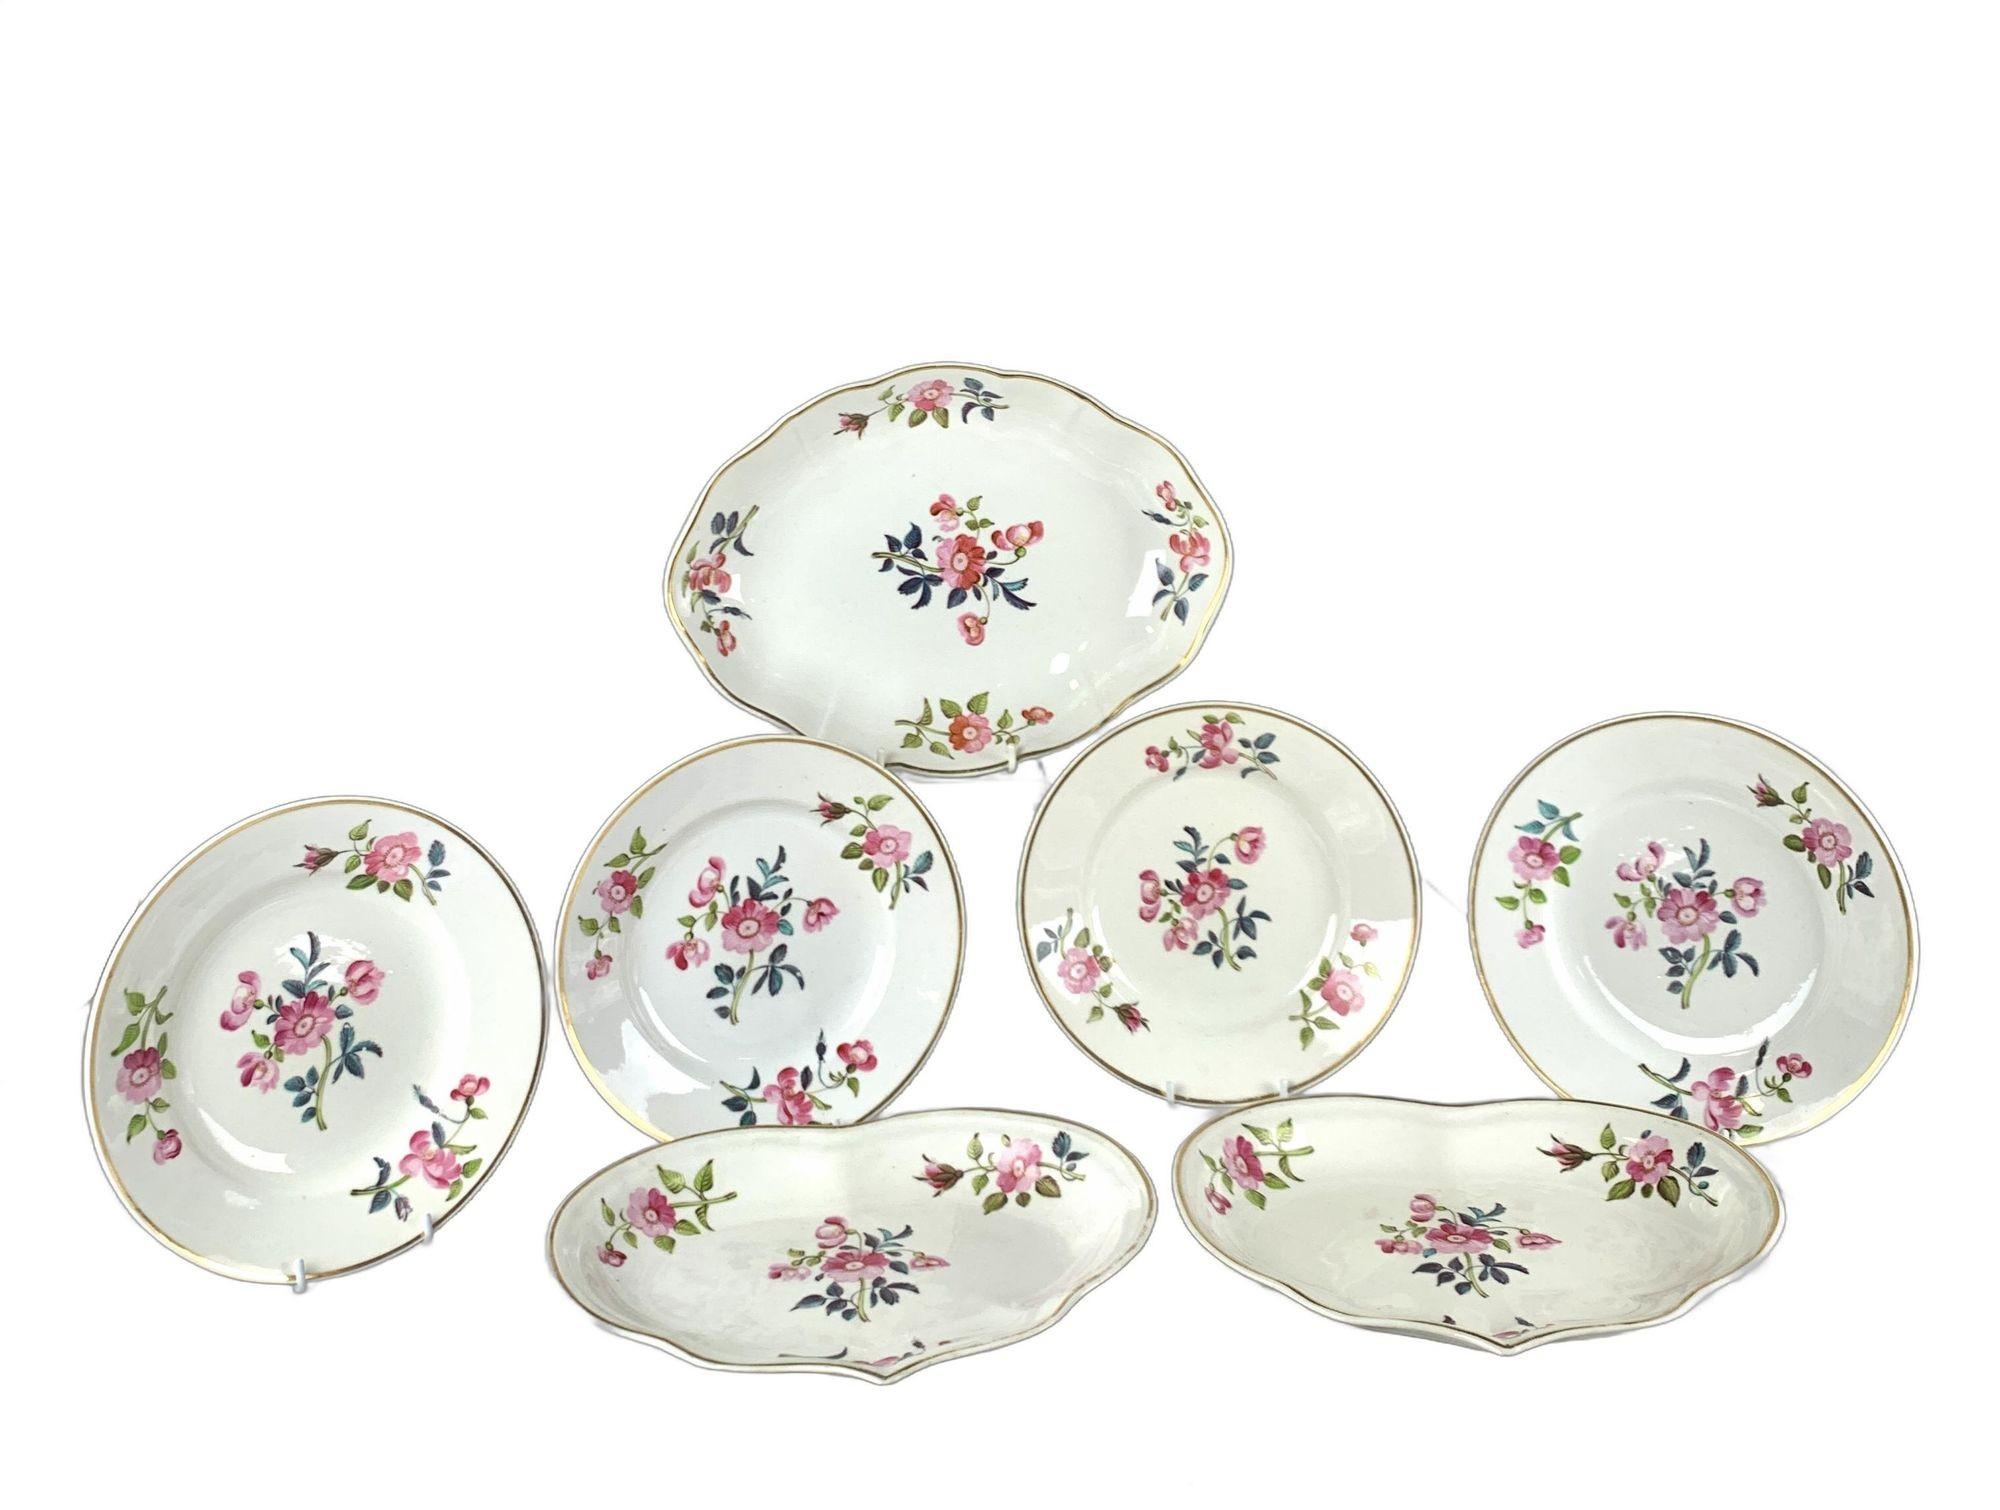 Ces jolis plats ont été fabriqués en Angleterre vers 1815.
Ils sont ornés de roses roses peintes à la main sur de la porcelaine Derby d'un blanc éclatant, complétées par des feuilles vertes et turquoises.
À la fin du XVIIIe et au début du XIXe